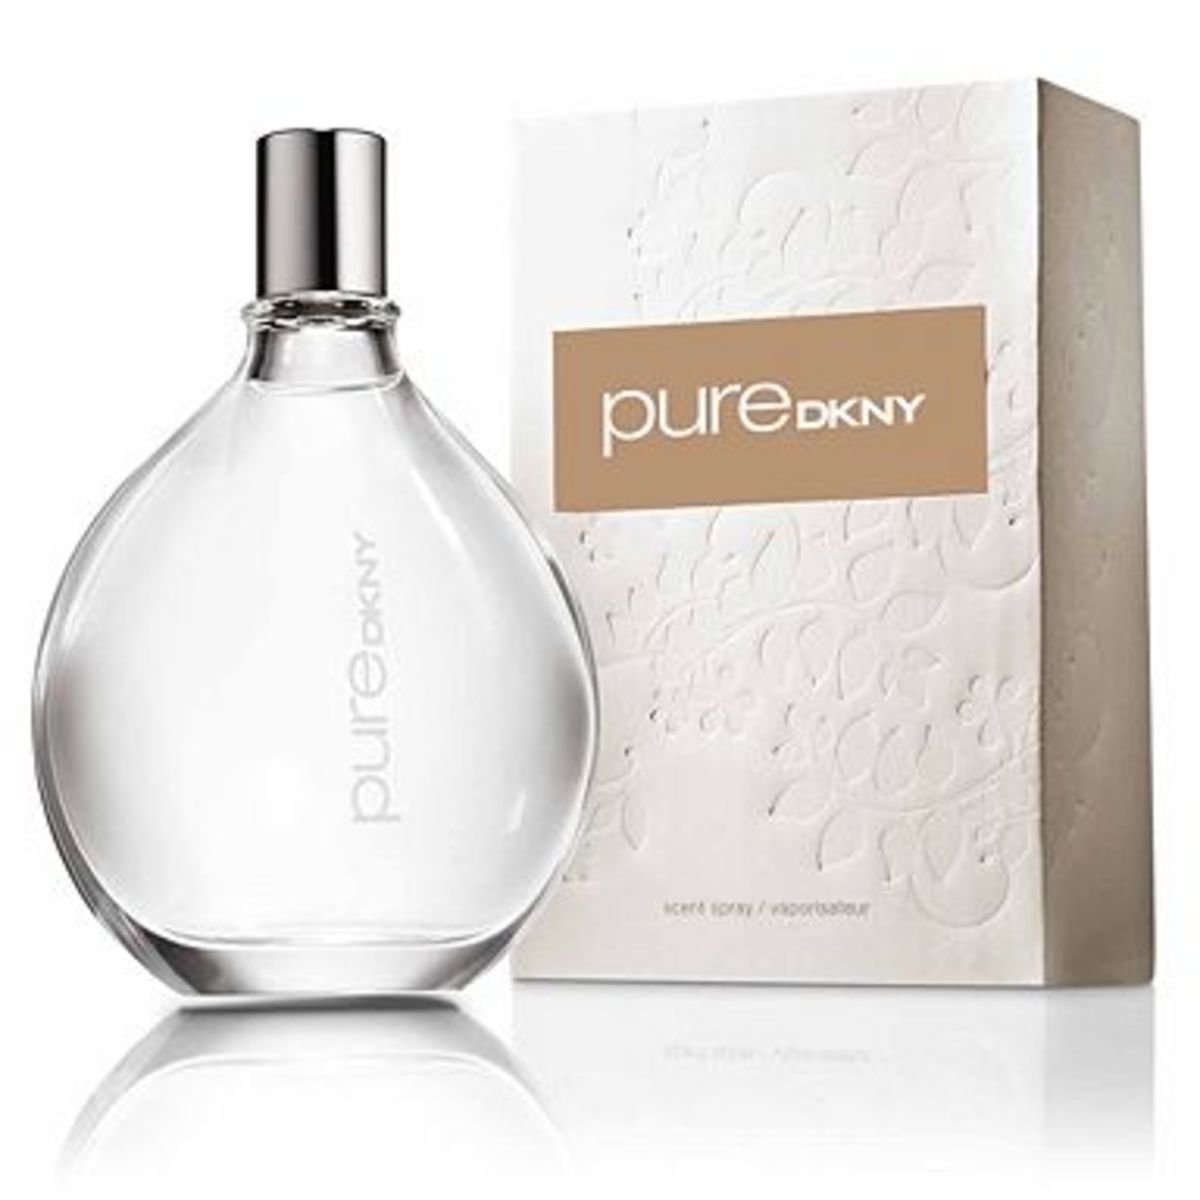 pure dkny 100ml eau de parfum